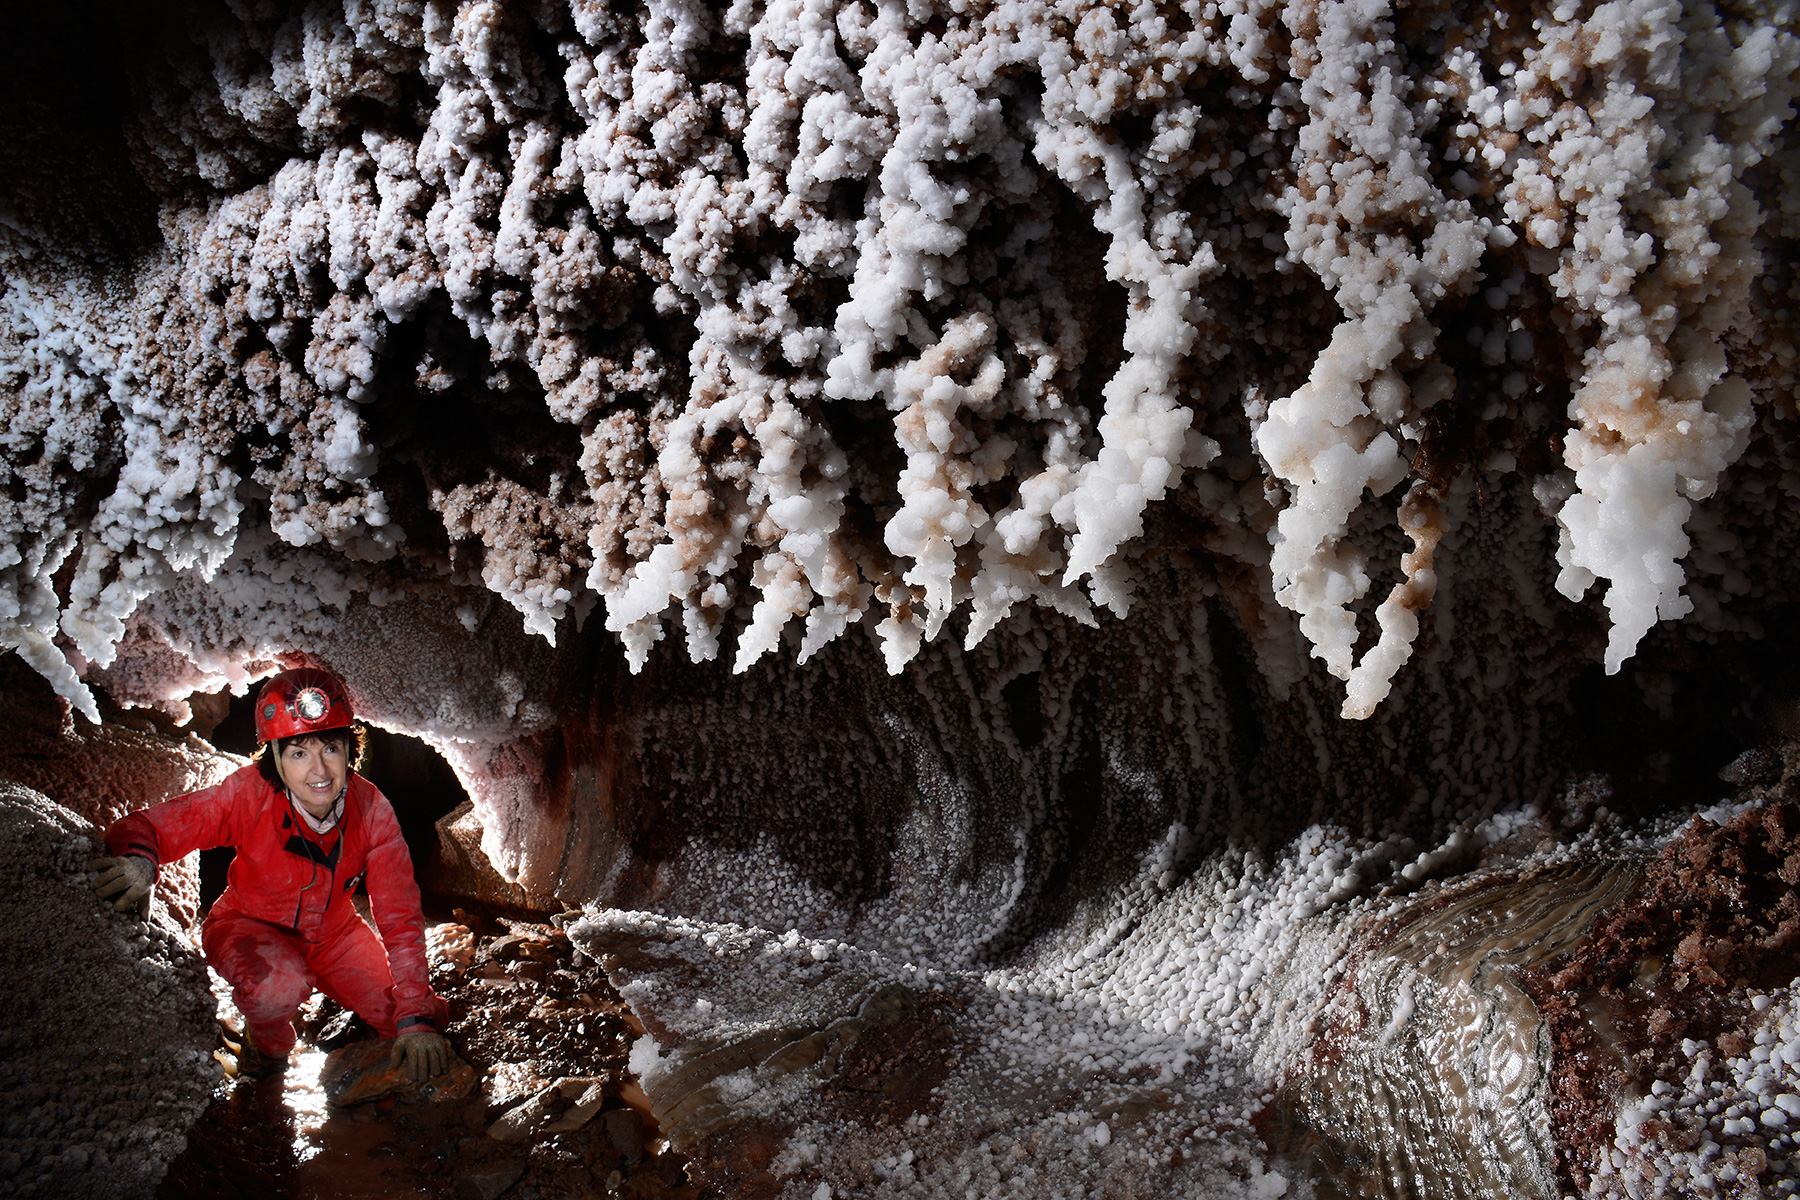 Cueva de sal (Espagne) : spéléo dans galerie avec cristallisations de sel sur les parois